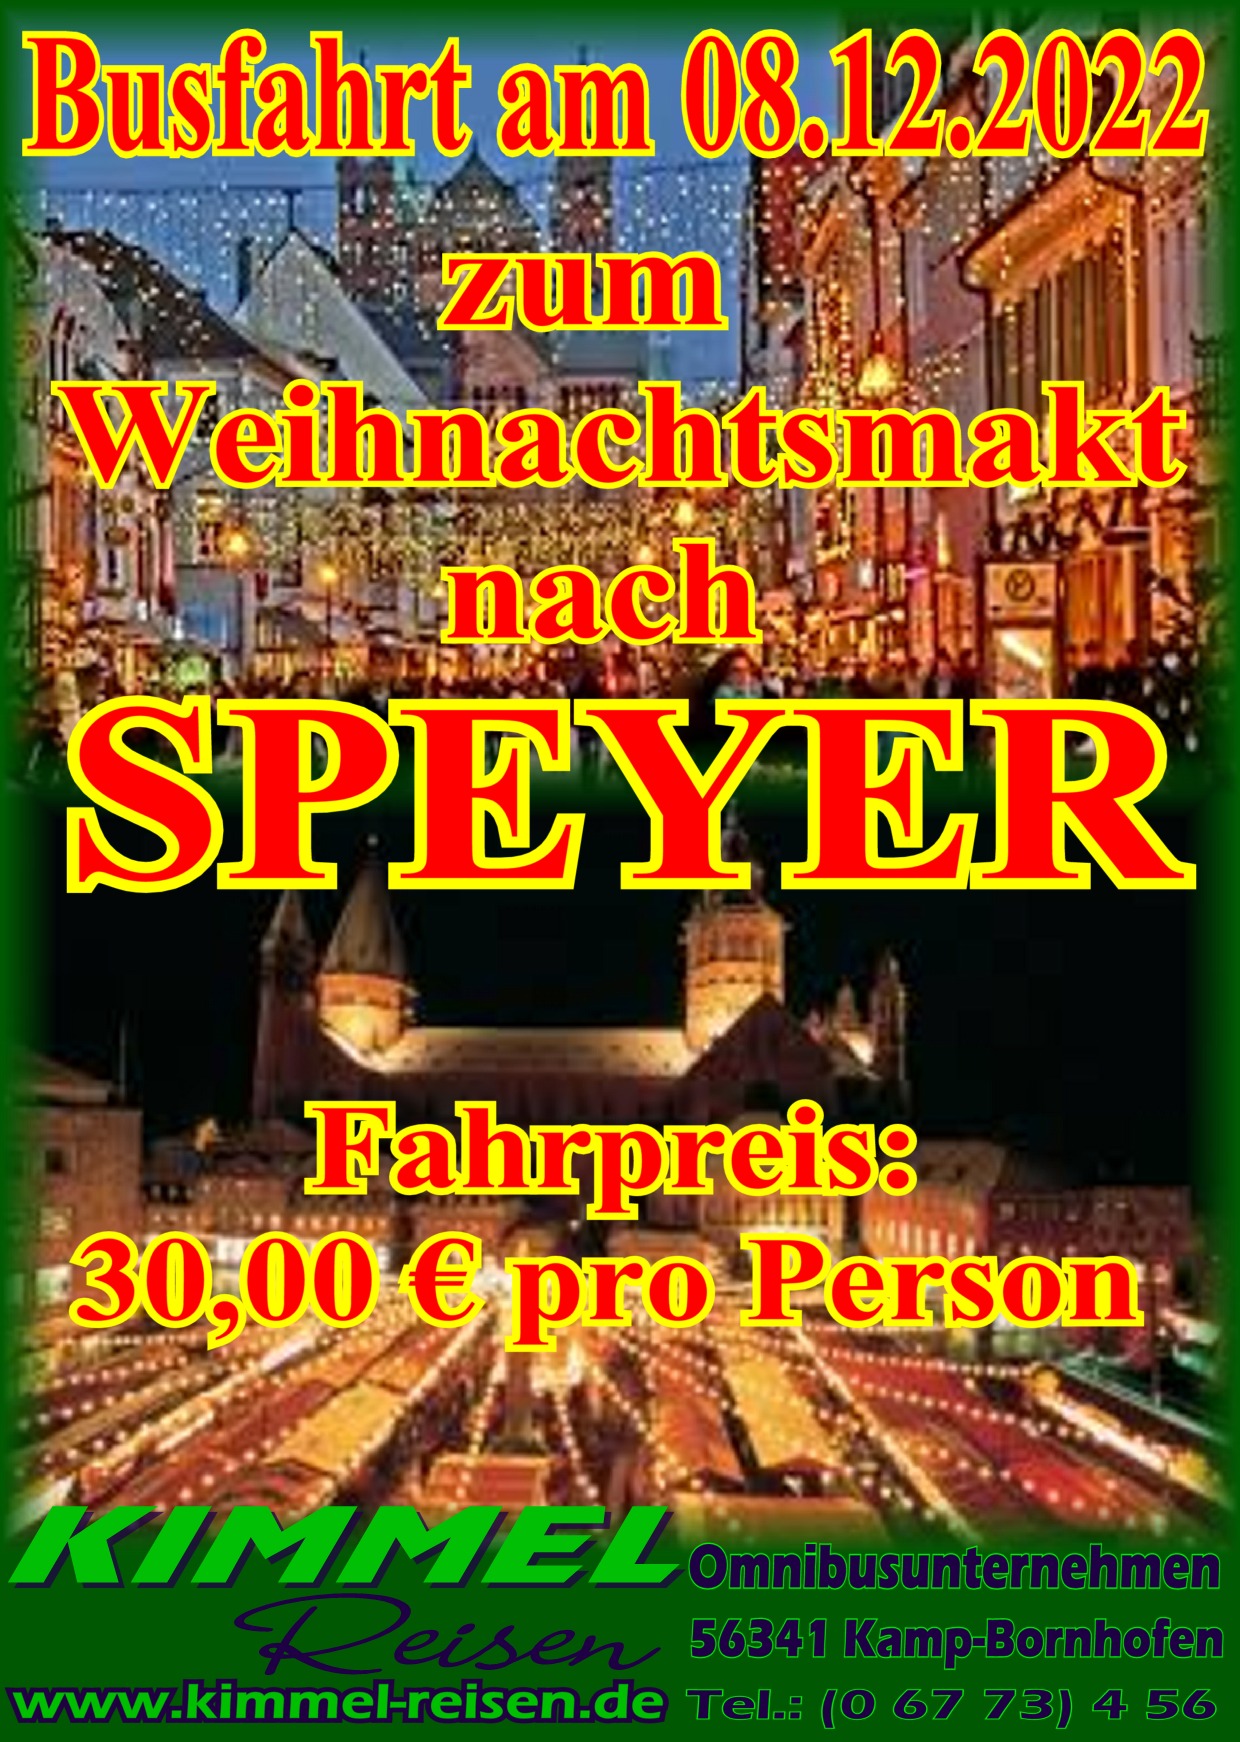 Weihnachtsmarkt-Speyer-Kimmel-Reisen-Kamp-Bornhofen